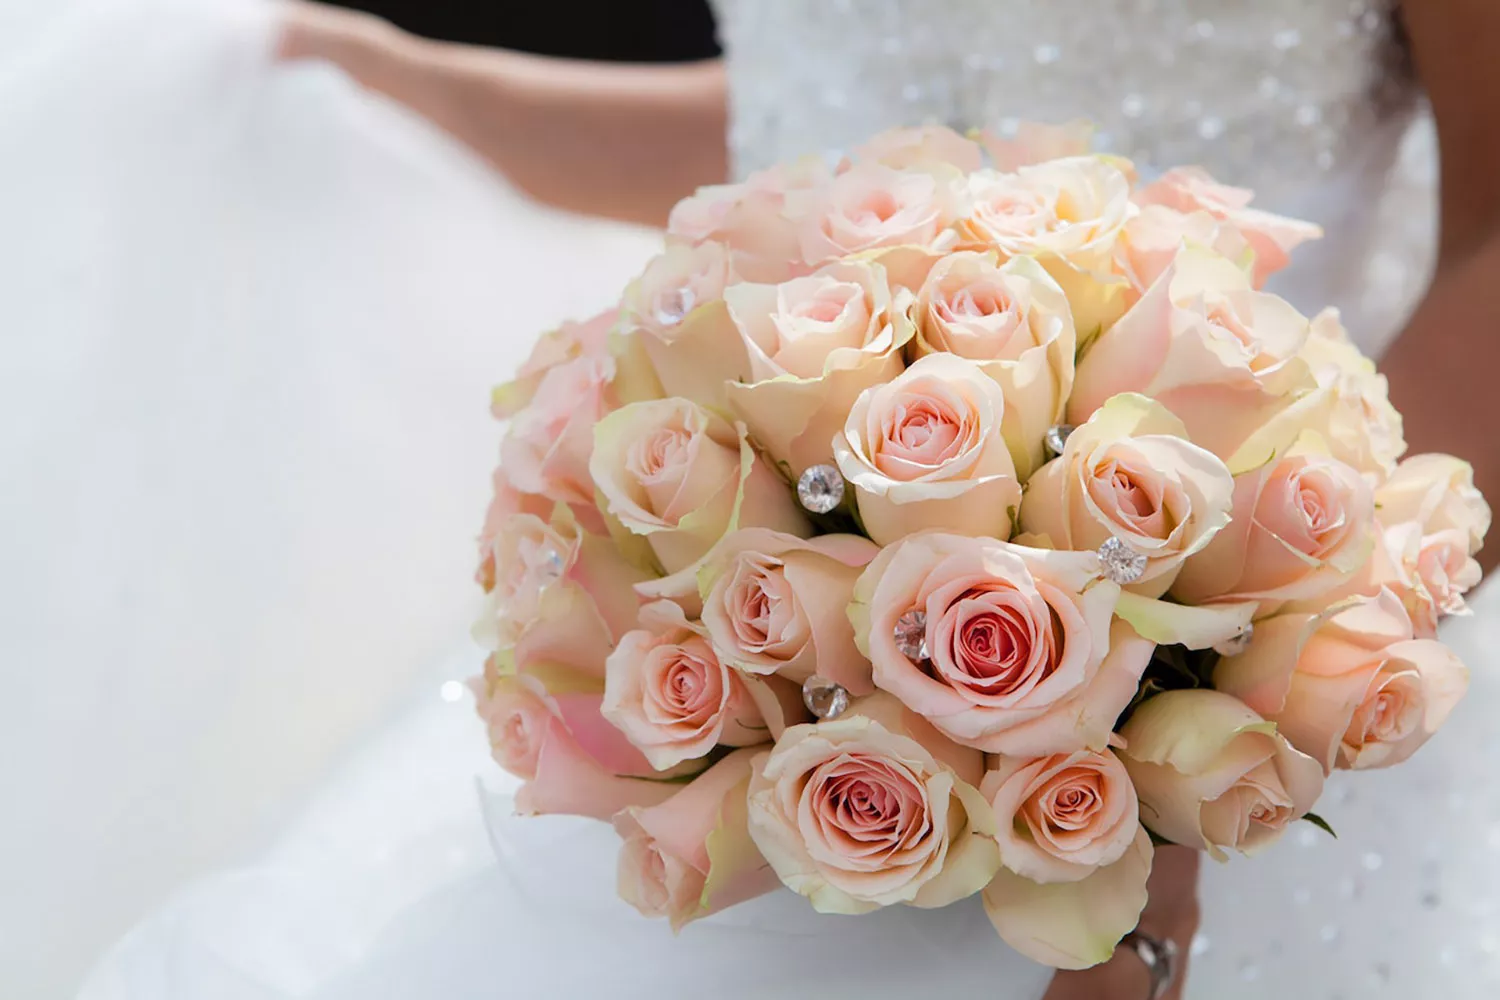 因為需要在婚禮當天呈現完美狀態的花朵，故鮮花捧花價格較高。